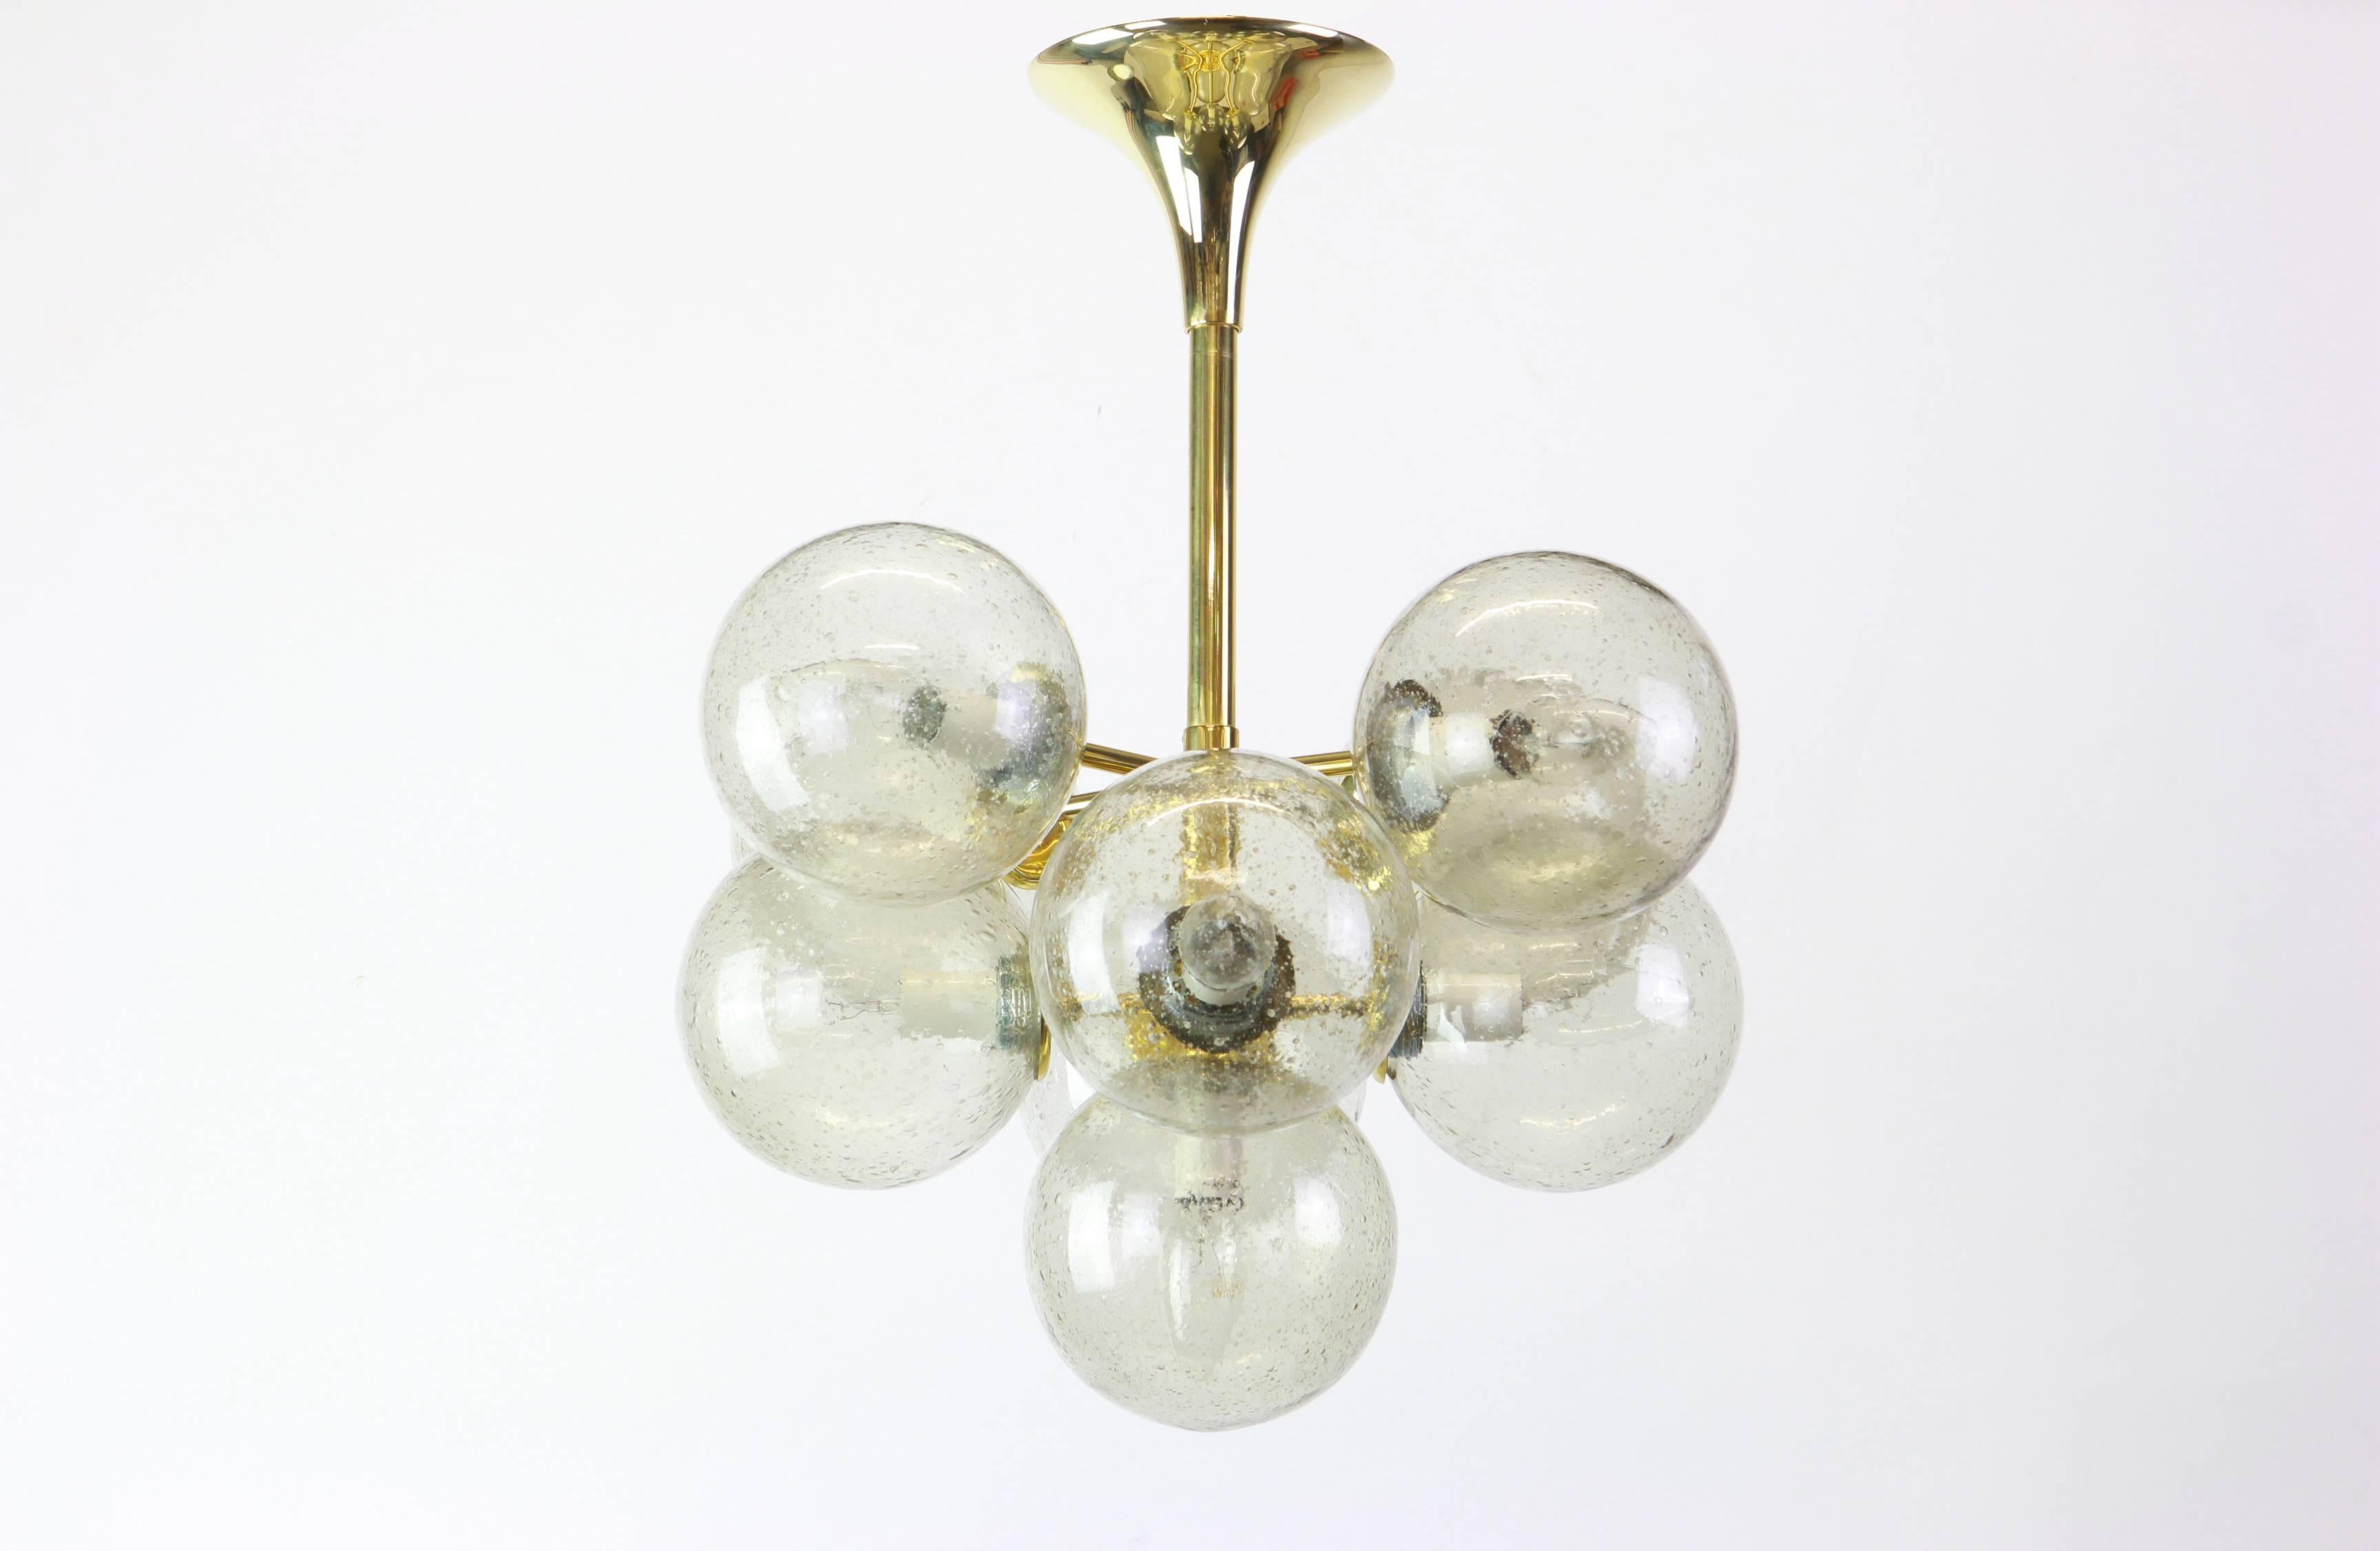 Atomic Kronleuchter mit neun Glaskugeln wurde von dem Schweizer Künstler und Designer Max Billing für Temde Leuchten entworfen. Die Kugeln sind mundgeblasen und mit einer Schraubvorrichtung versehen.

Hochwertig und in sehr gutem Zustand. Gereinigt,